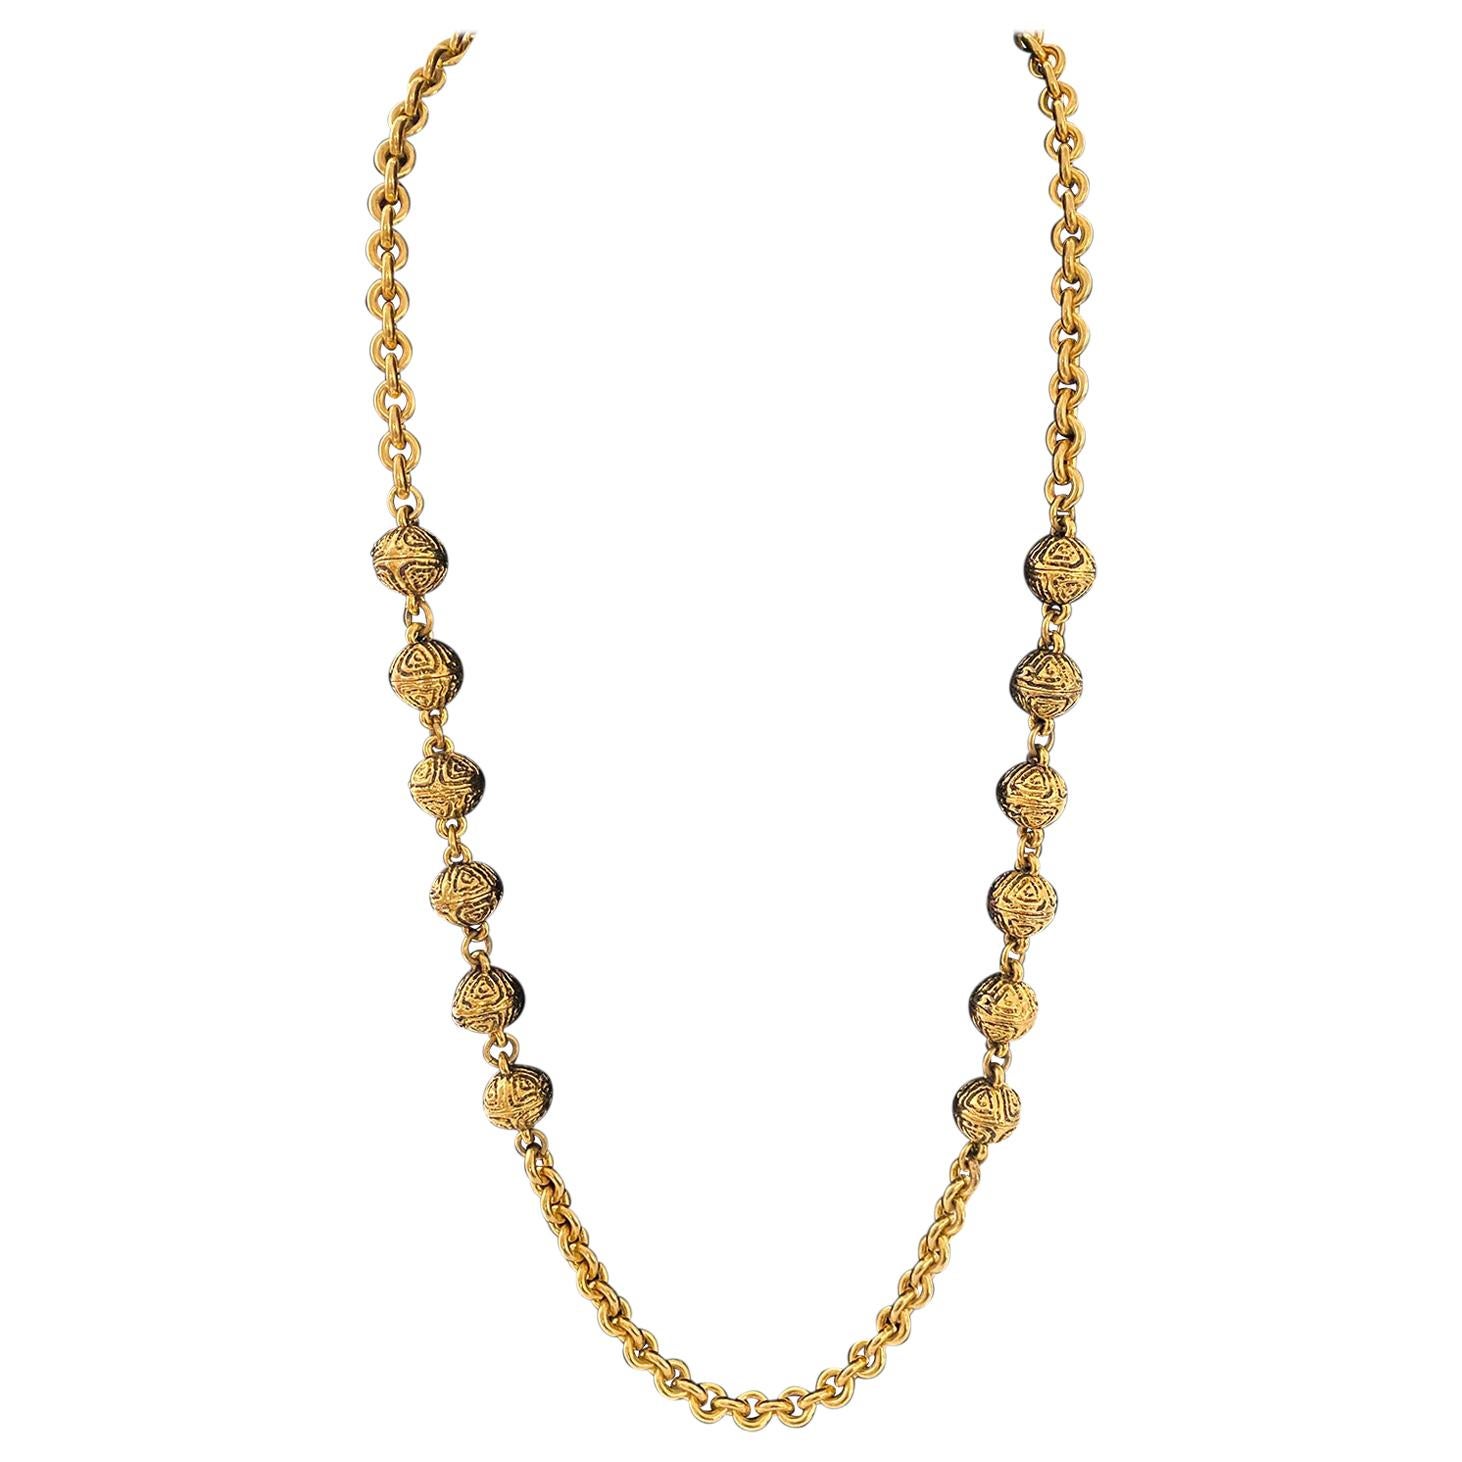 1985 Chanel Goldfarbene Gliederhalskette mit Kettengliedern und vergoldeten Perlen 